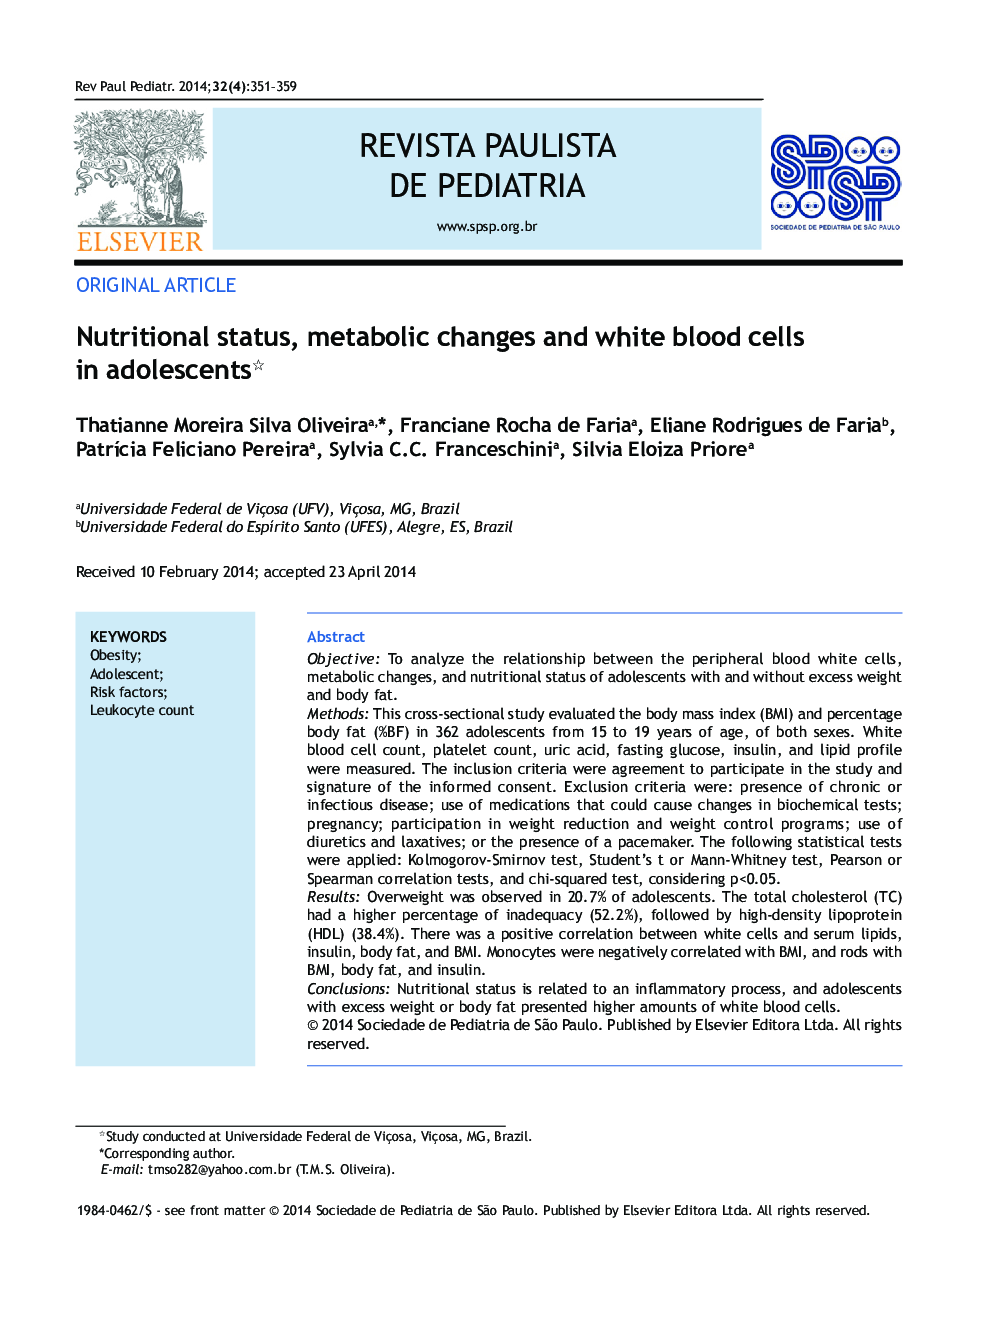 وضعیت تغذیه ای، تغییرات متابولیک و گلبول های سفید خون در نوجوانان 